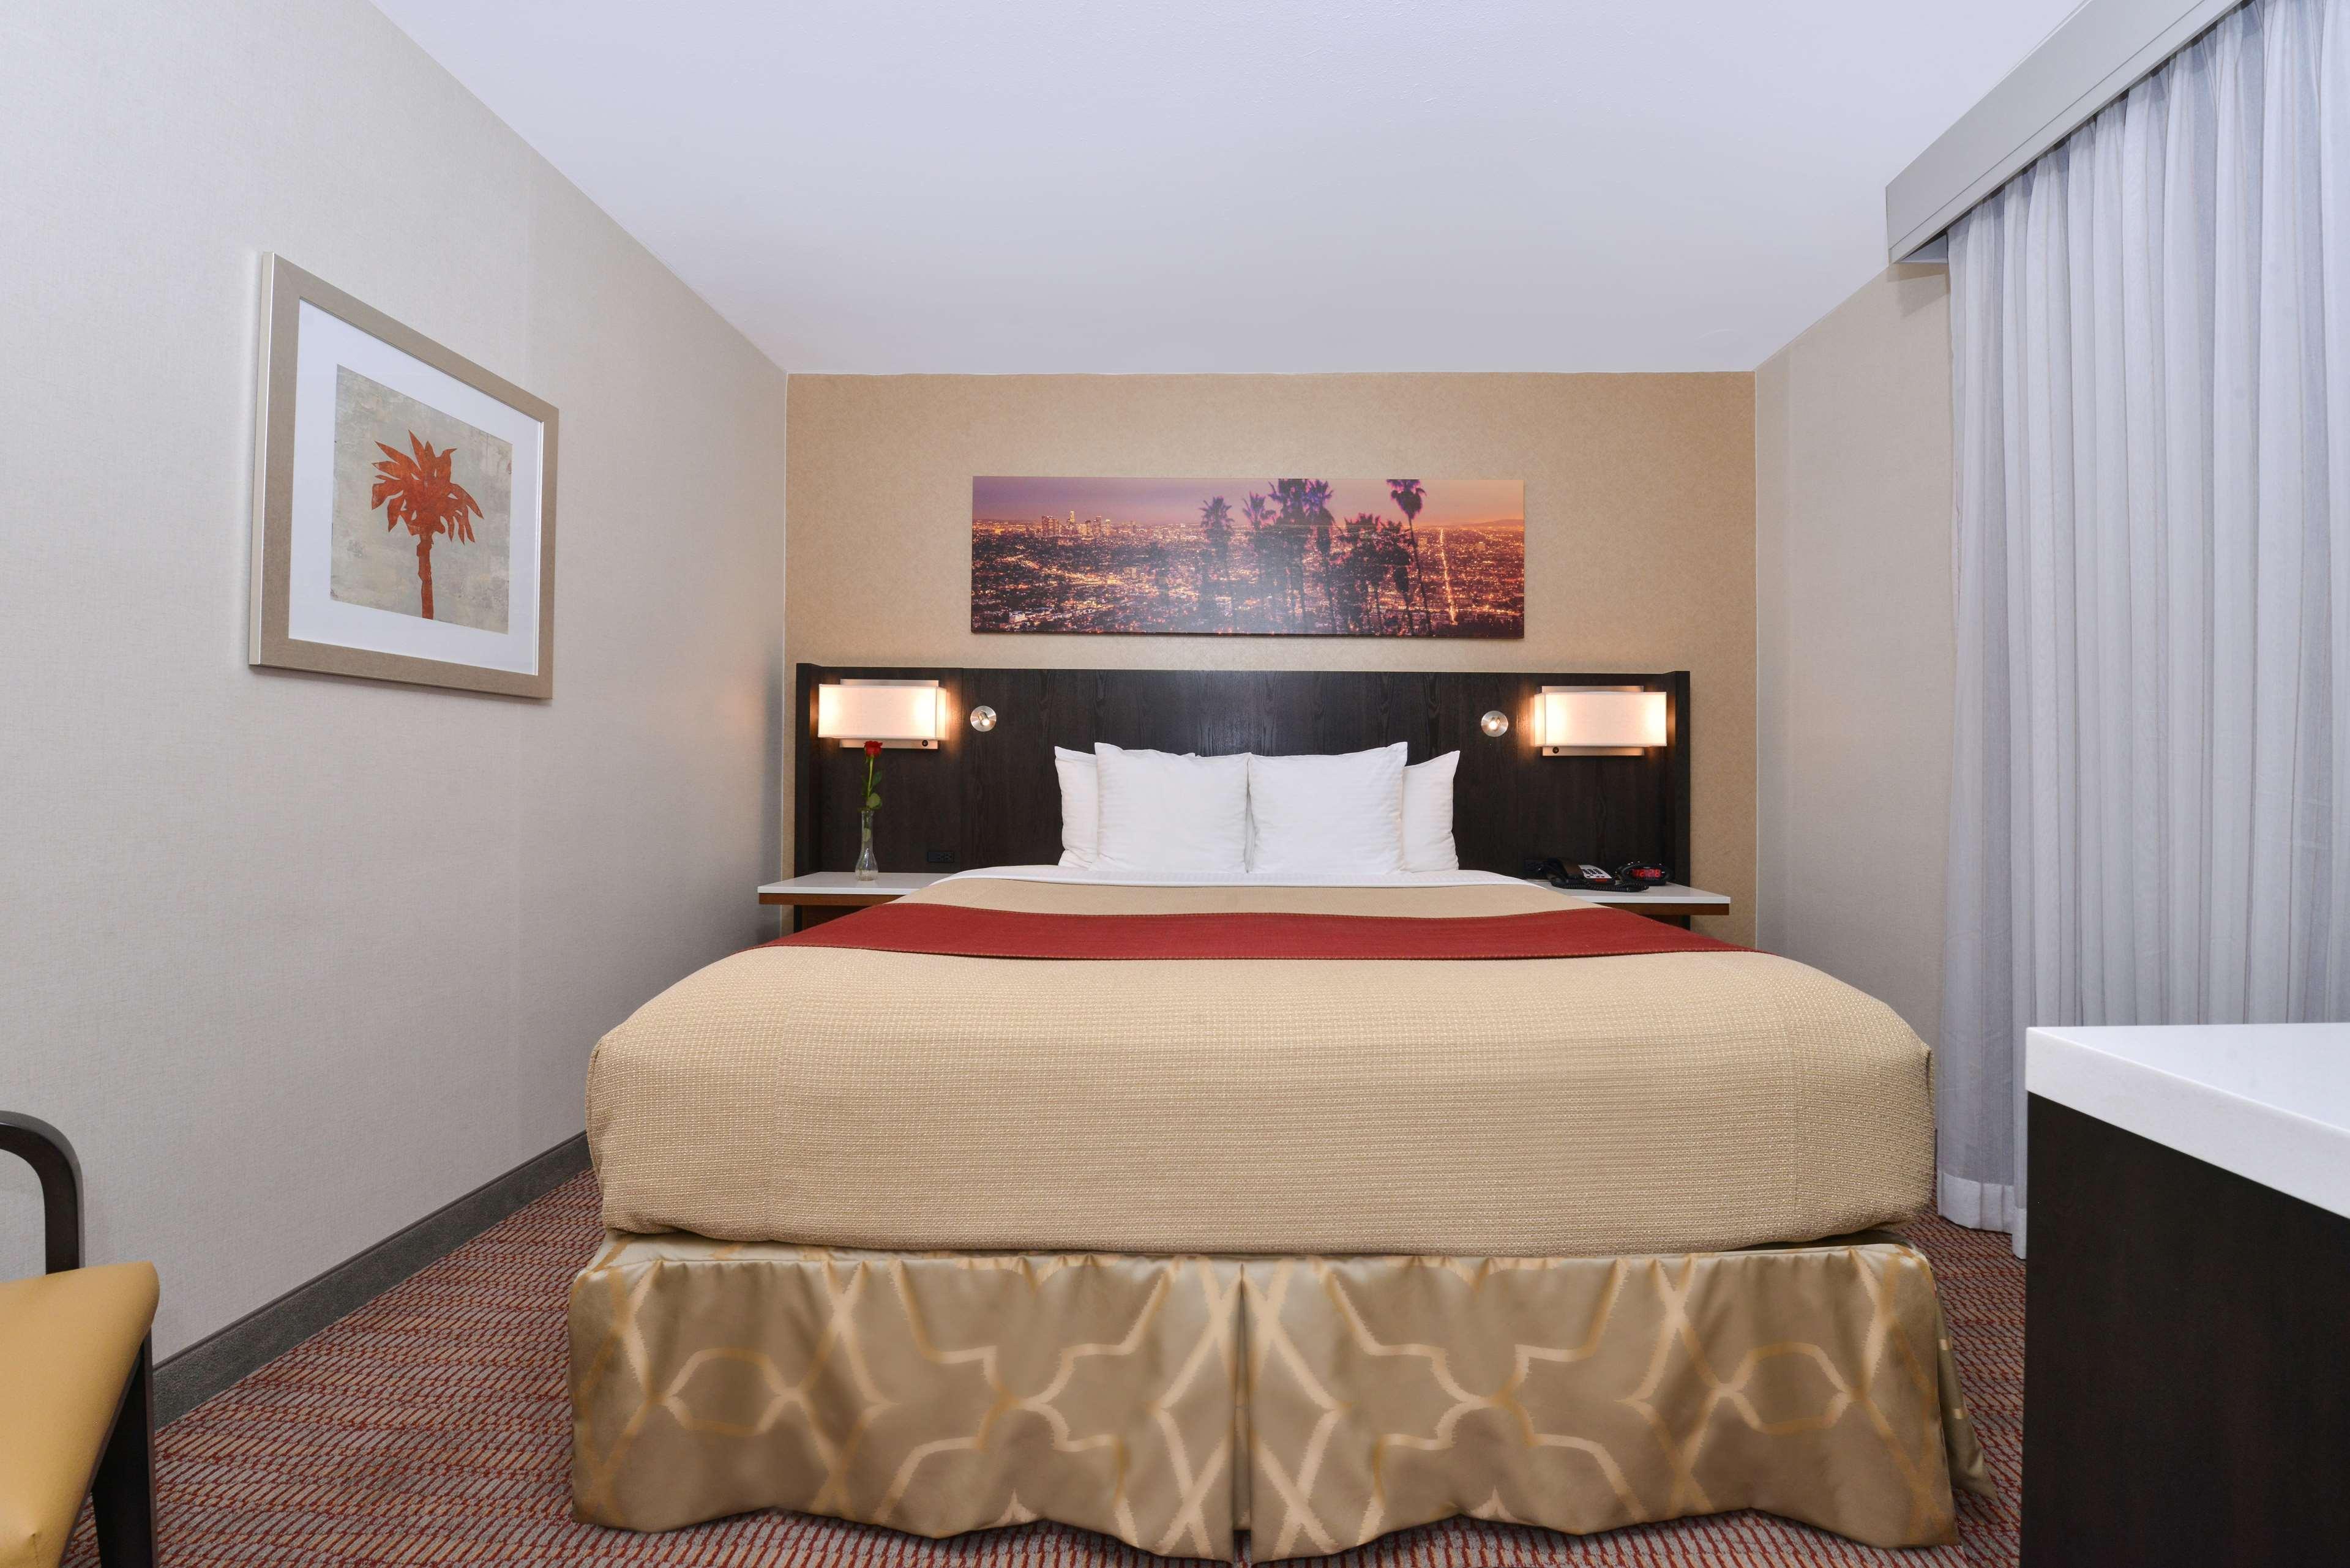 Best Western Royal Palace Inn & Suites Los Angeles Buitenkant foto